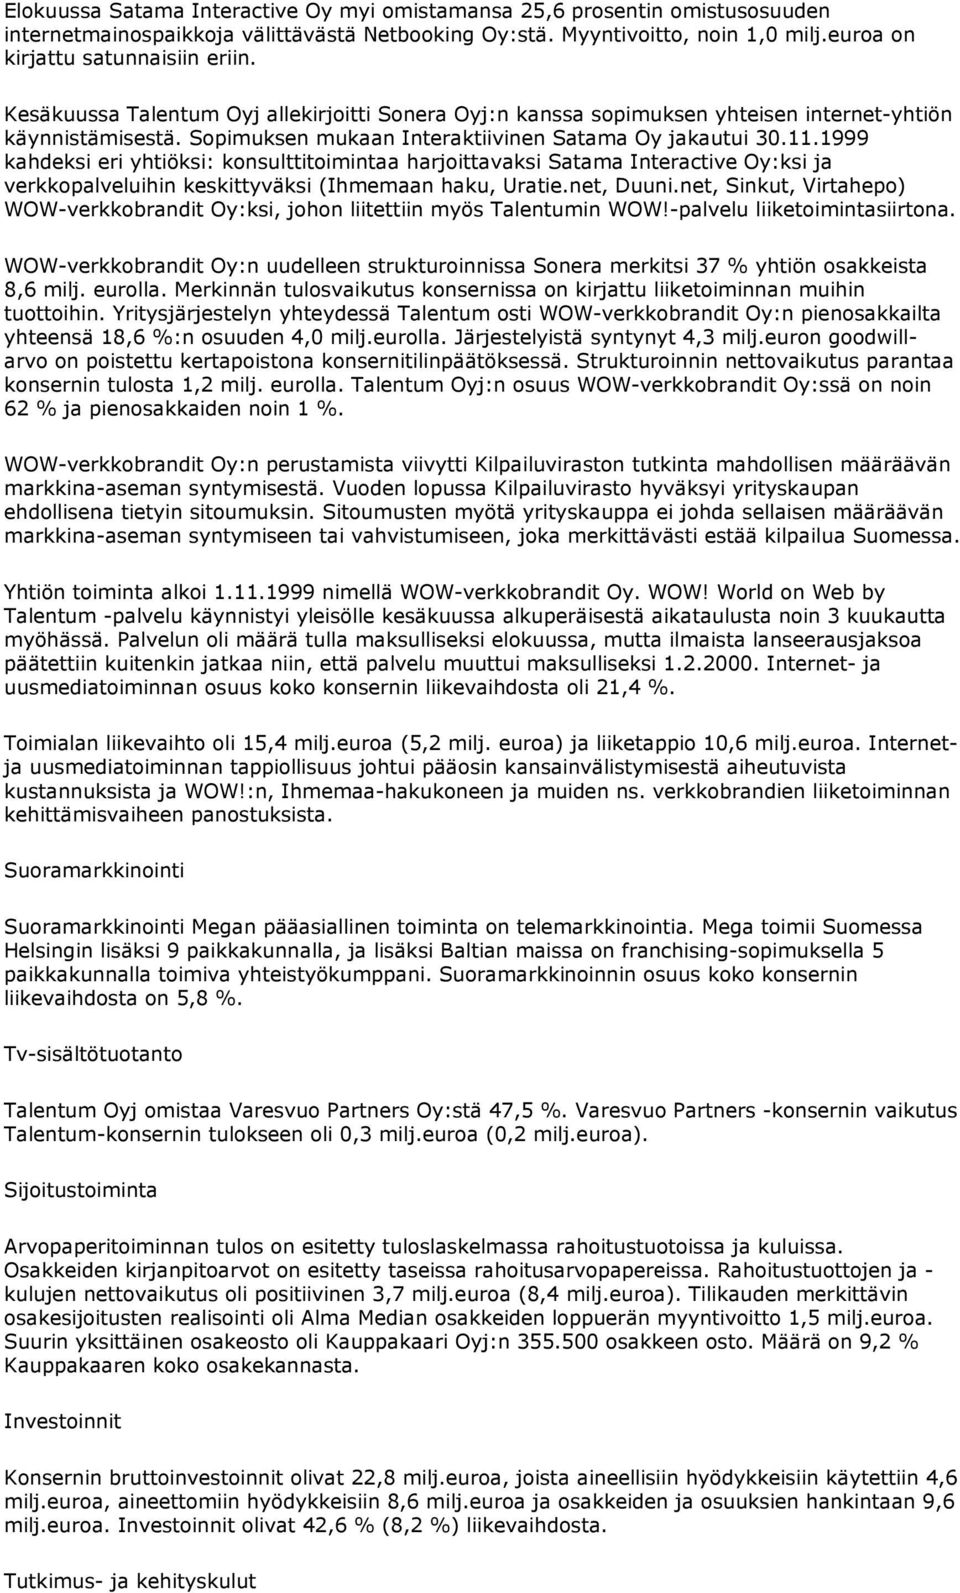 1999 kahdeksi eri yhtiöksi: konsulttitoimintaa harjoittavaksi Satama Interactive Oy:ksi ja verkkopalveluihin keskittyväksi (Ihmemaan haku, Uratie.net, Duuni.